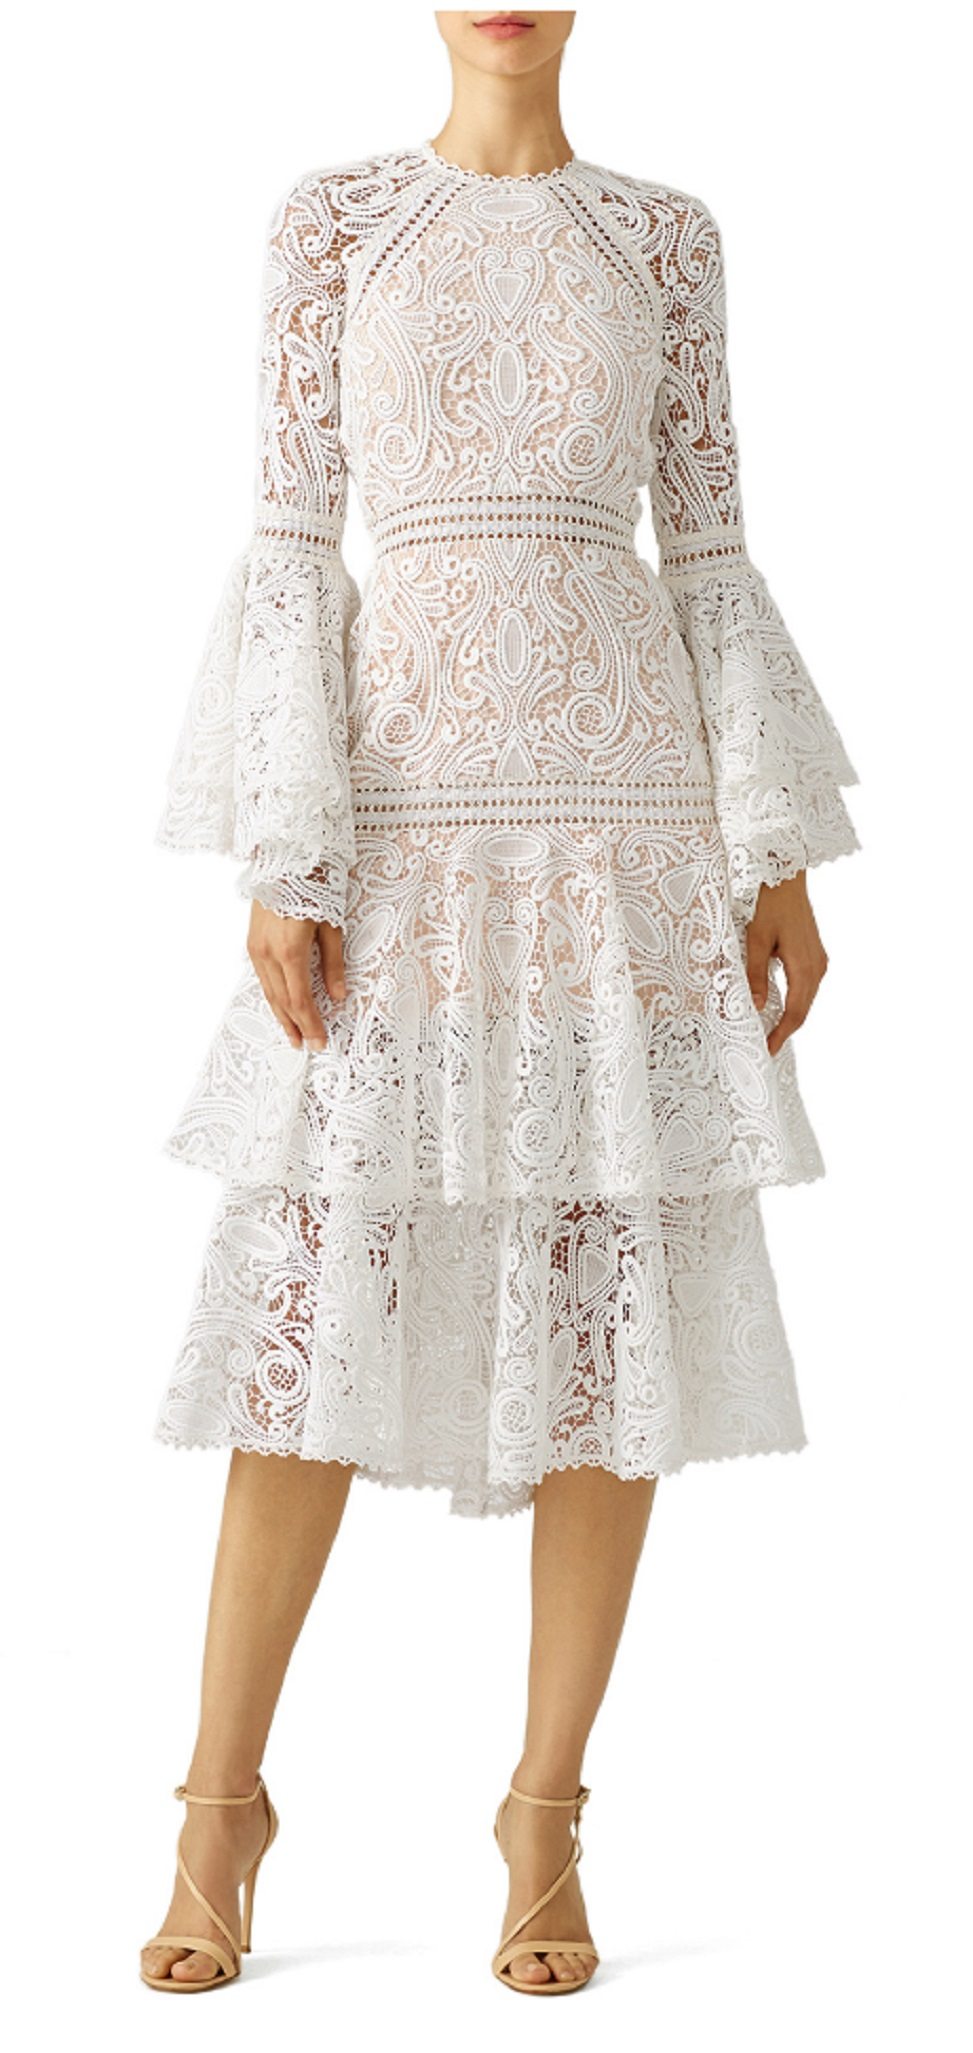 woman wearing an intricate white lace dress